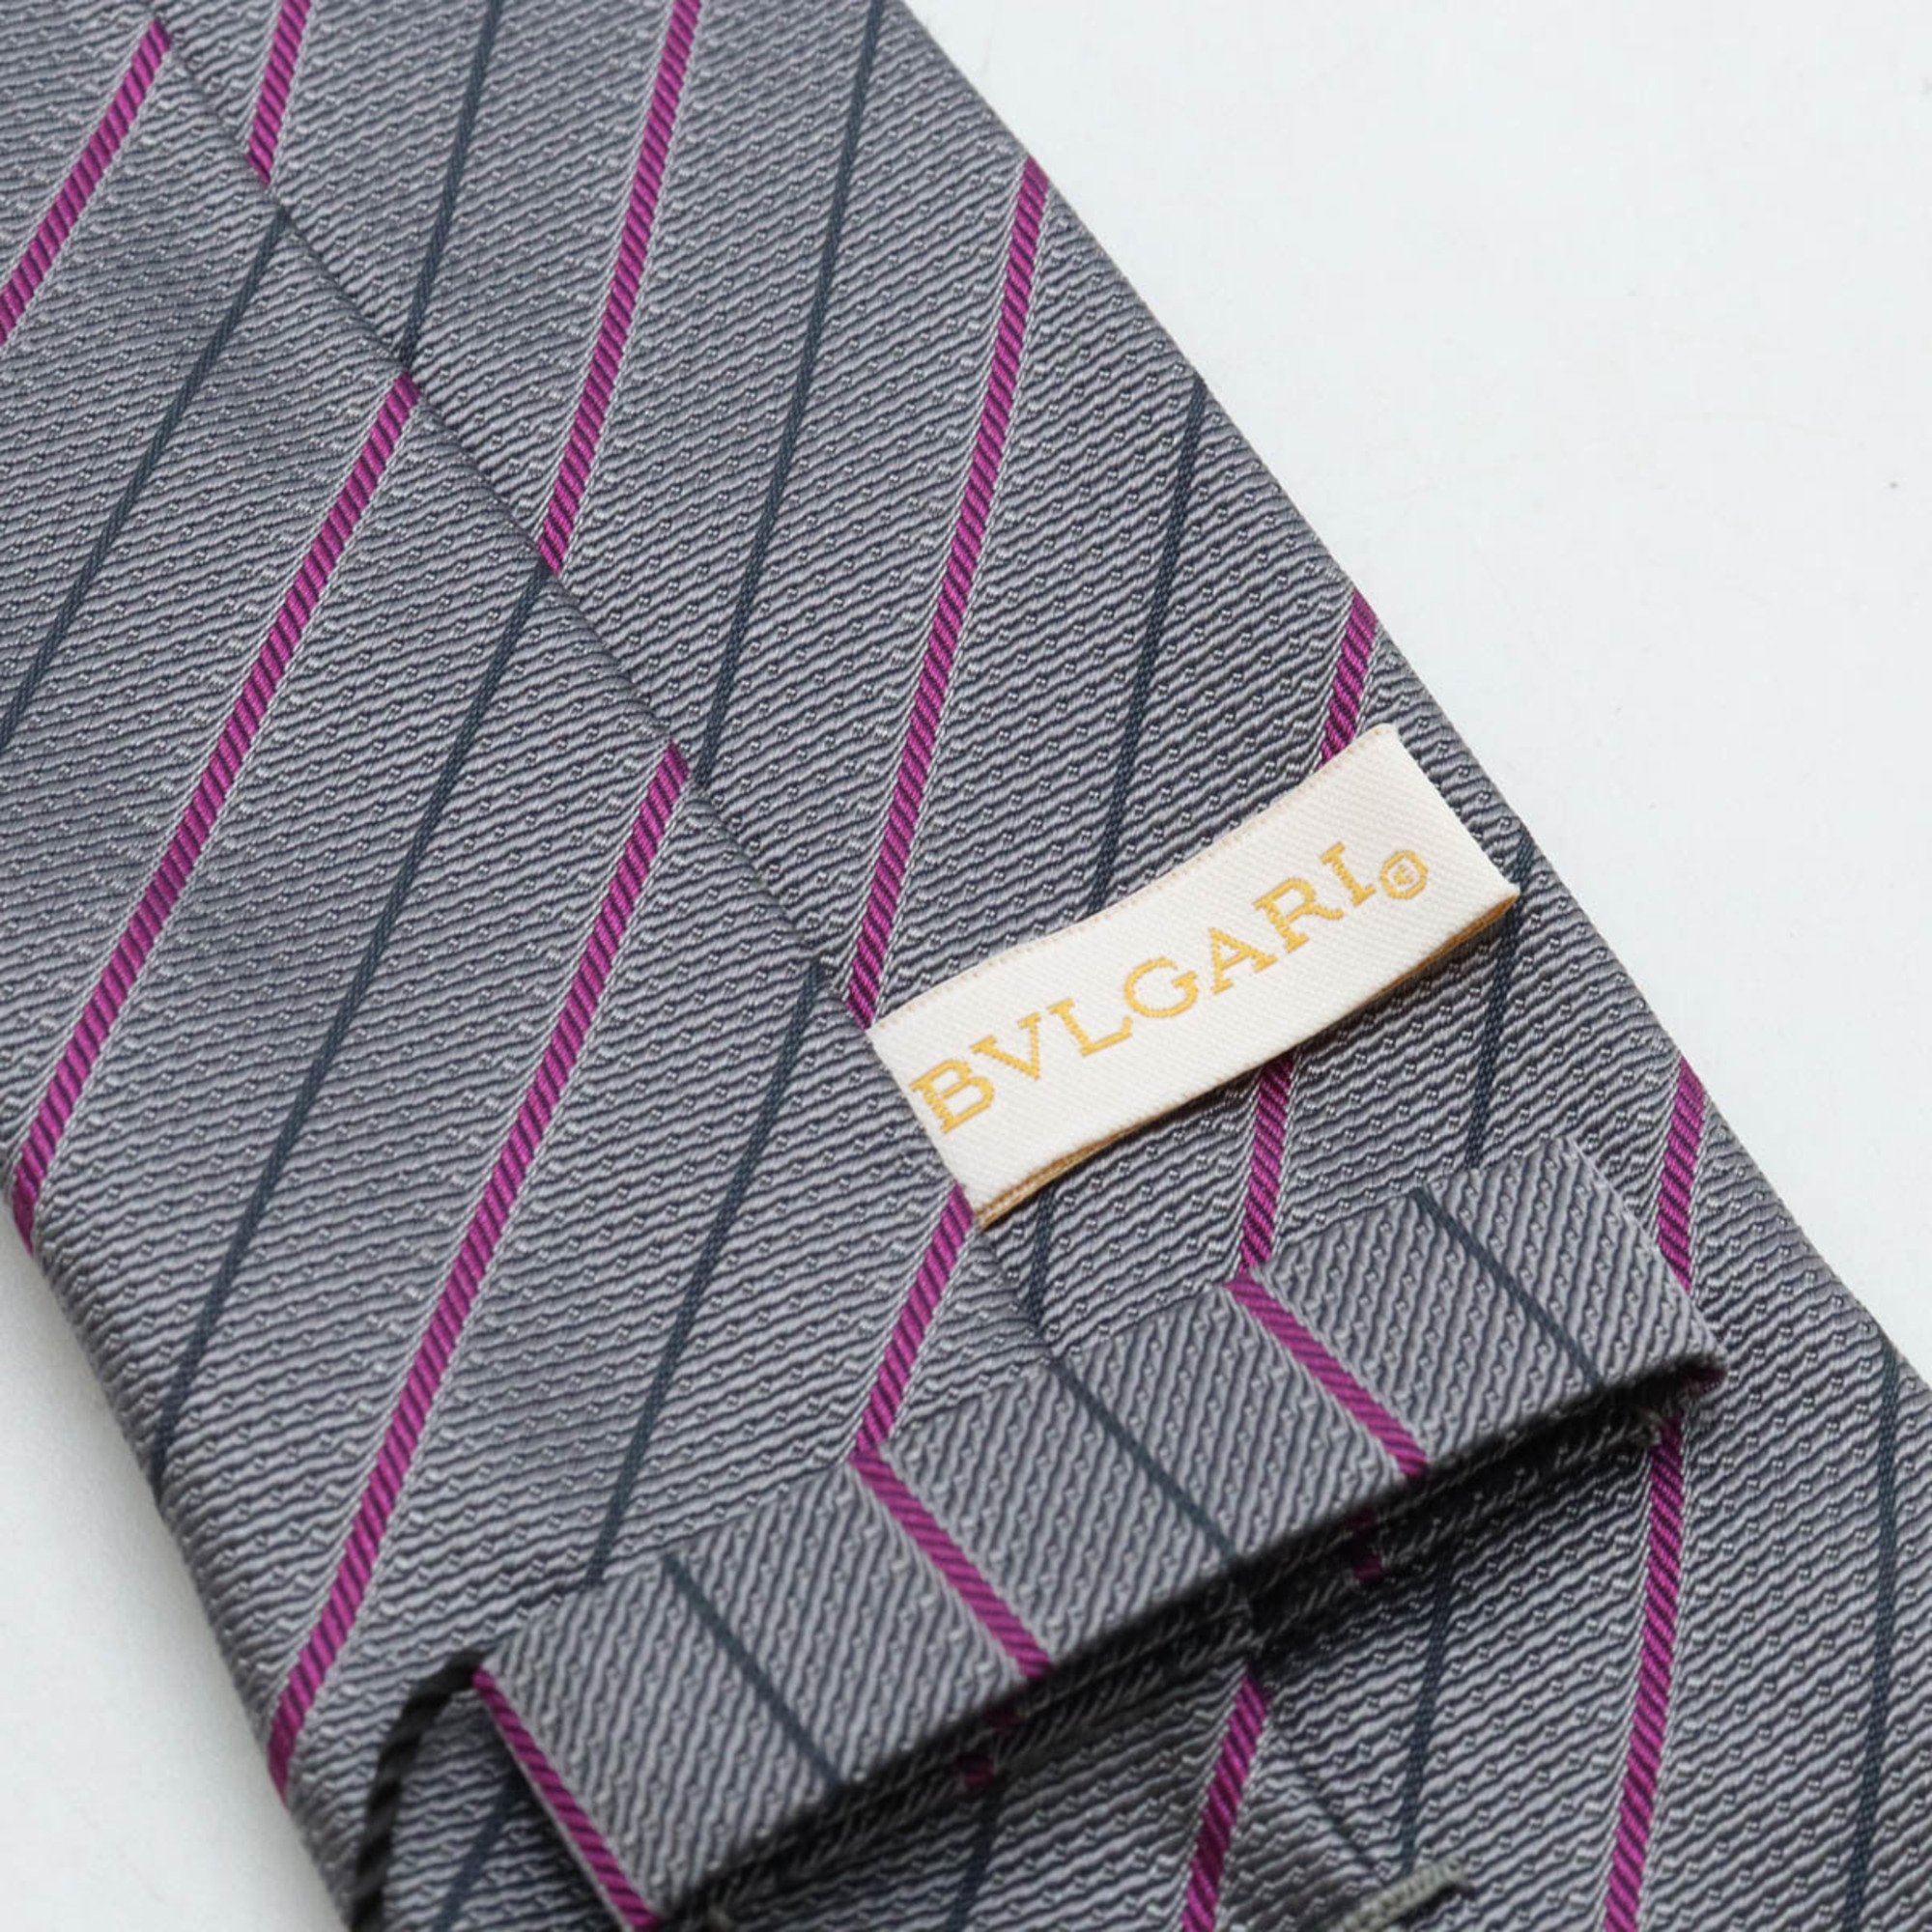 BVLGARI Sevenfold Necktie Striped British Style 100% Silk Gray Purple